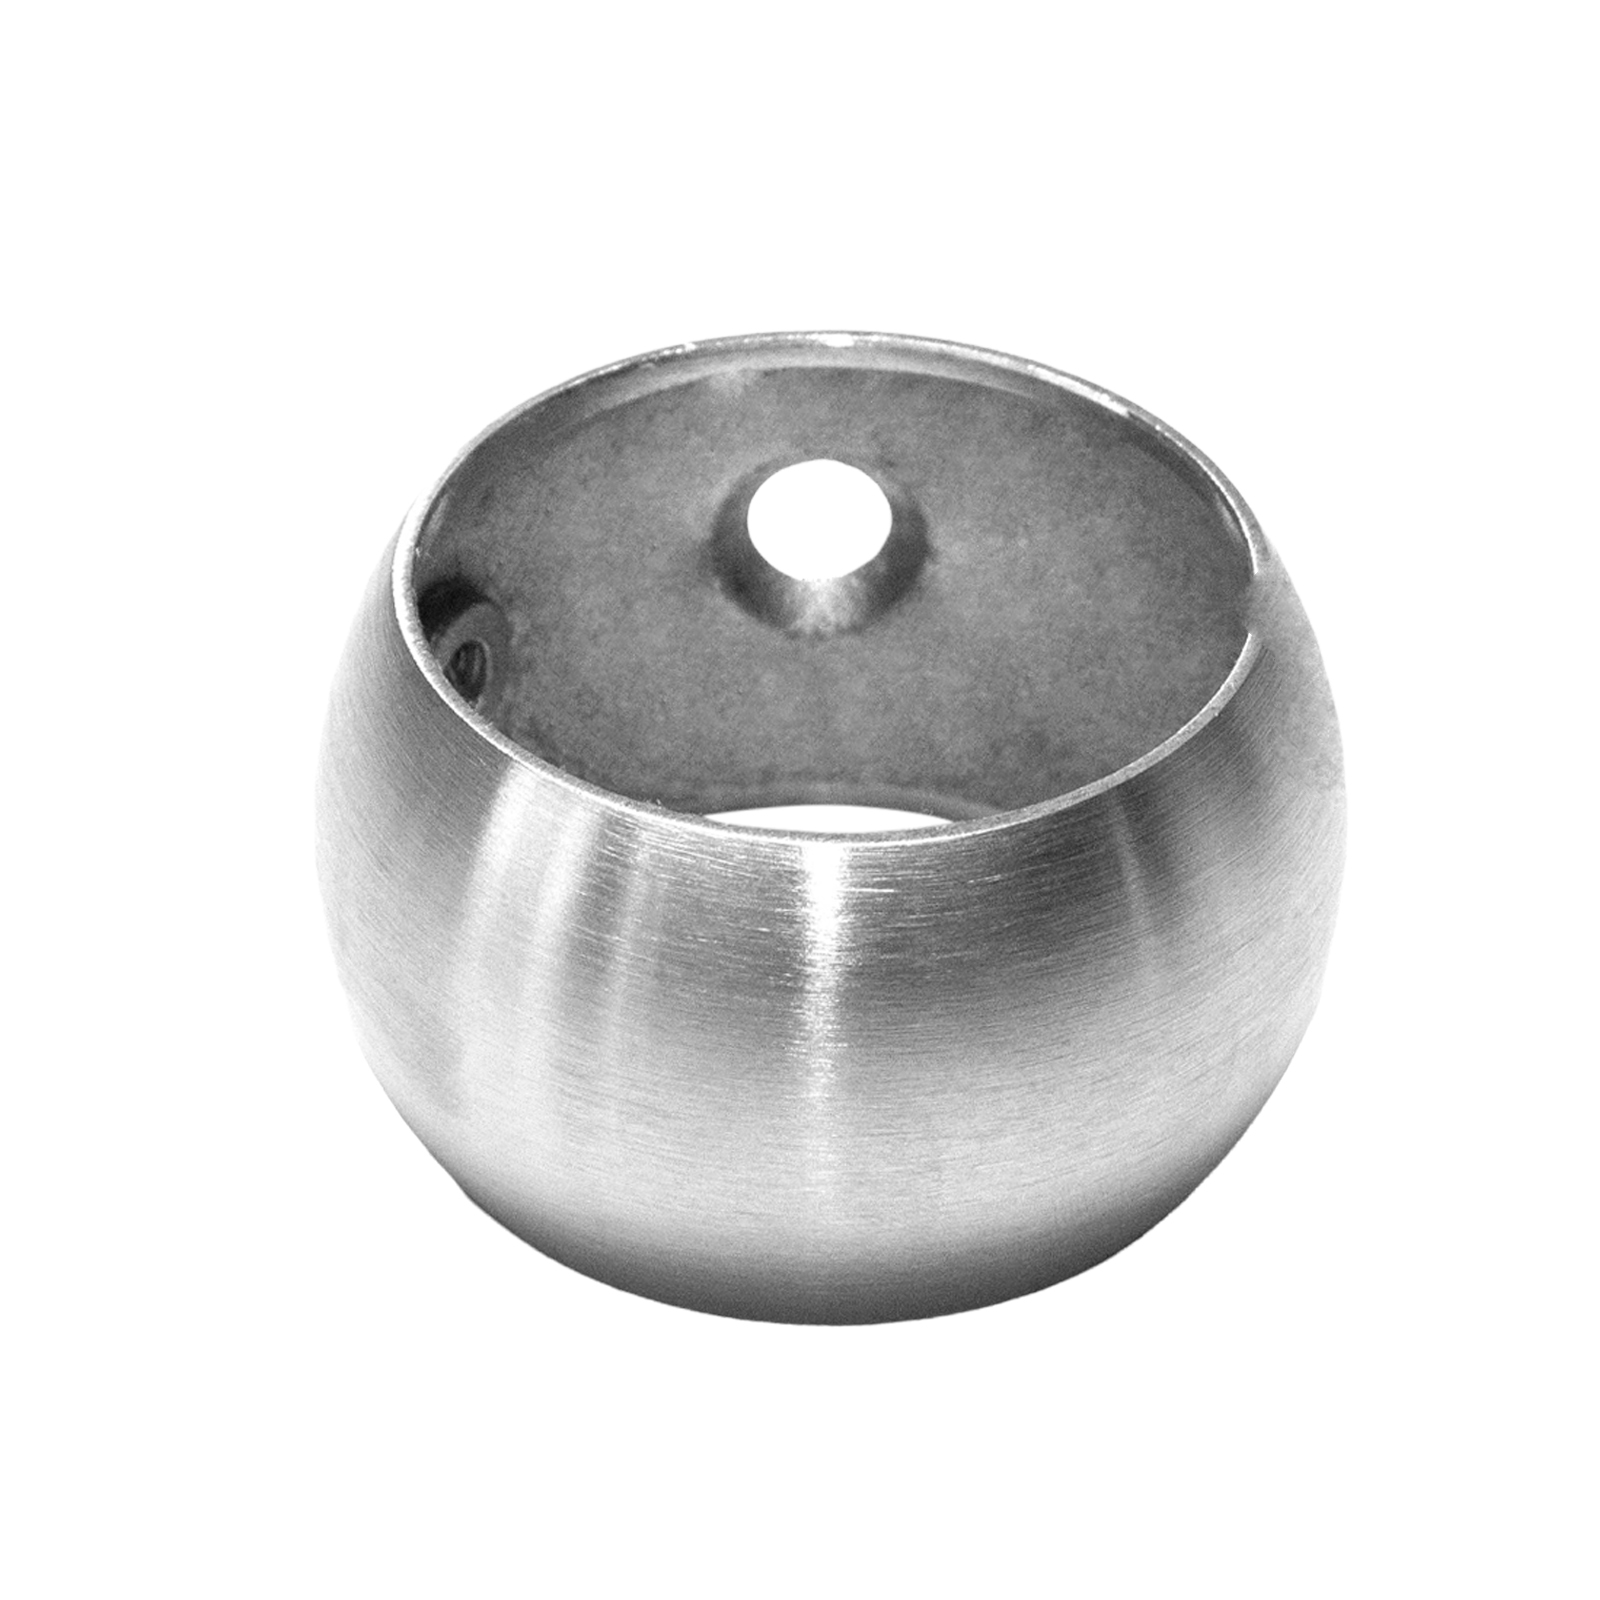 Aluminiumrohr 3,0 mm schwarz (C) / Ø 33,7 mm